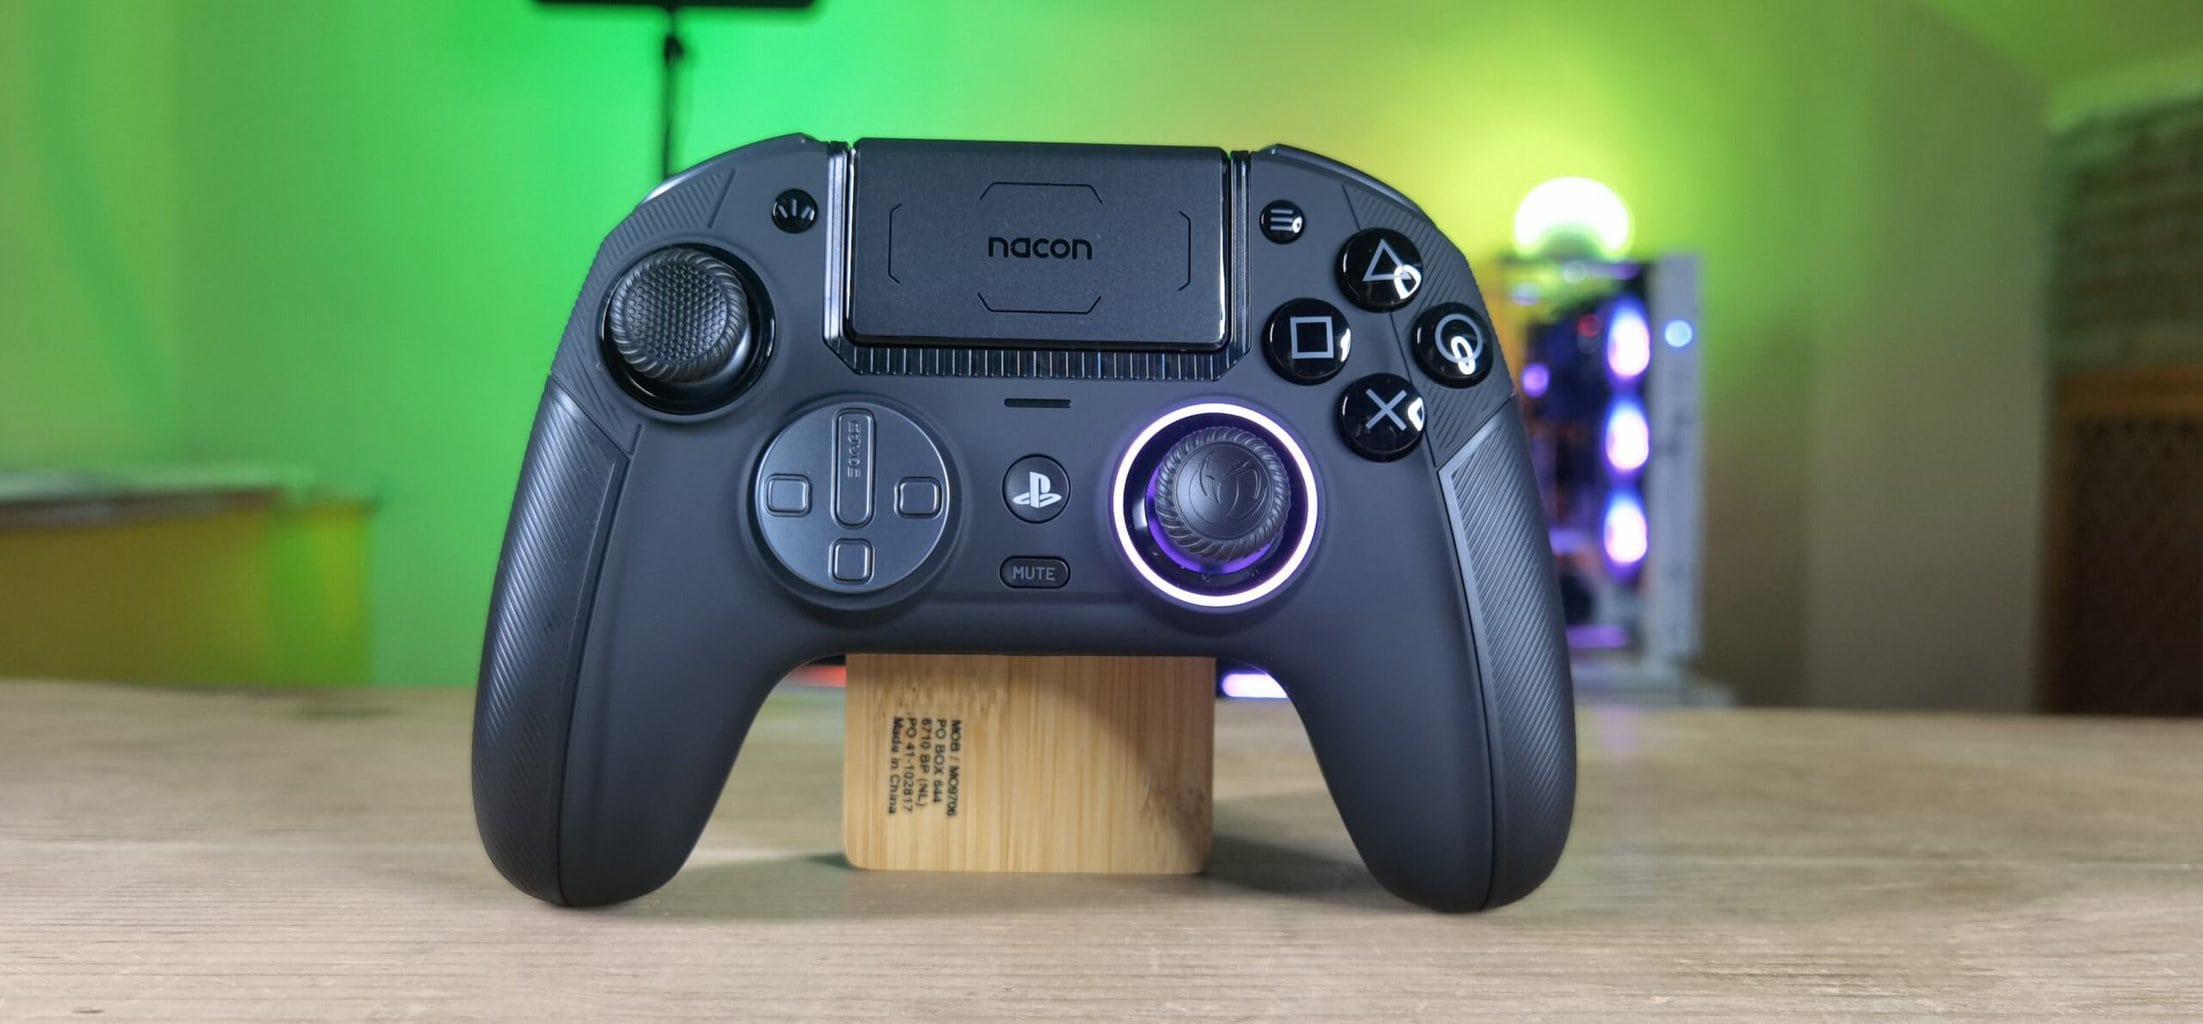 Nacon Revolution 5 Pro Controller, review completa en español - Game It -  Consolas, videojuegos y hardware. Gaming Culture.